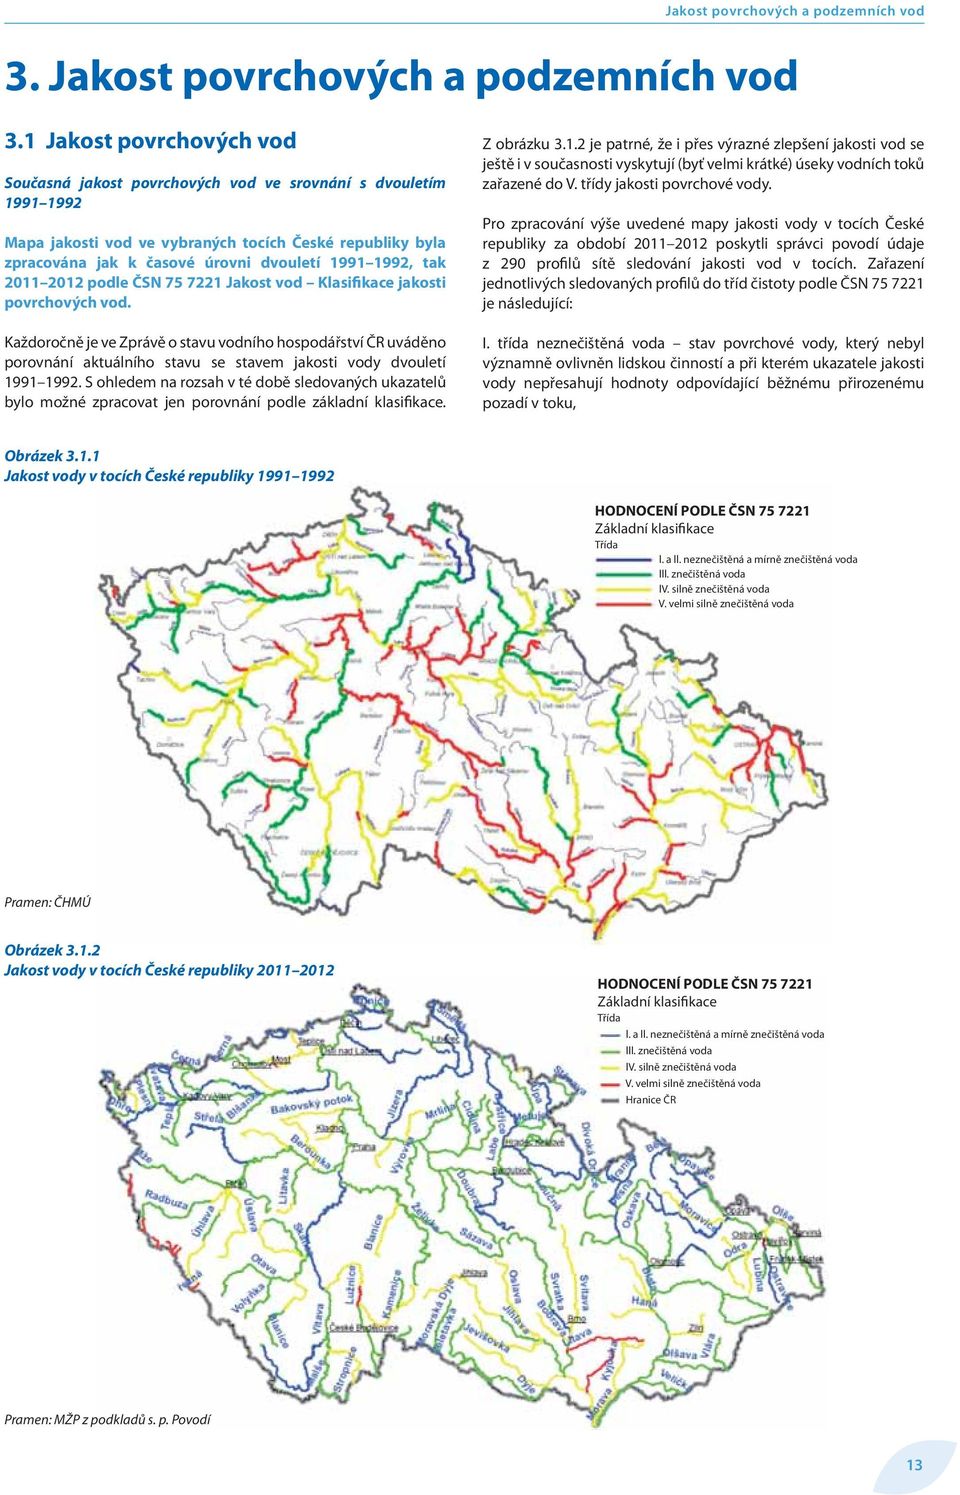 tak 2011 2012 podle ČSN 75 7221 Jakost vod Klasifikace jakosti povrchových vod.